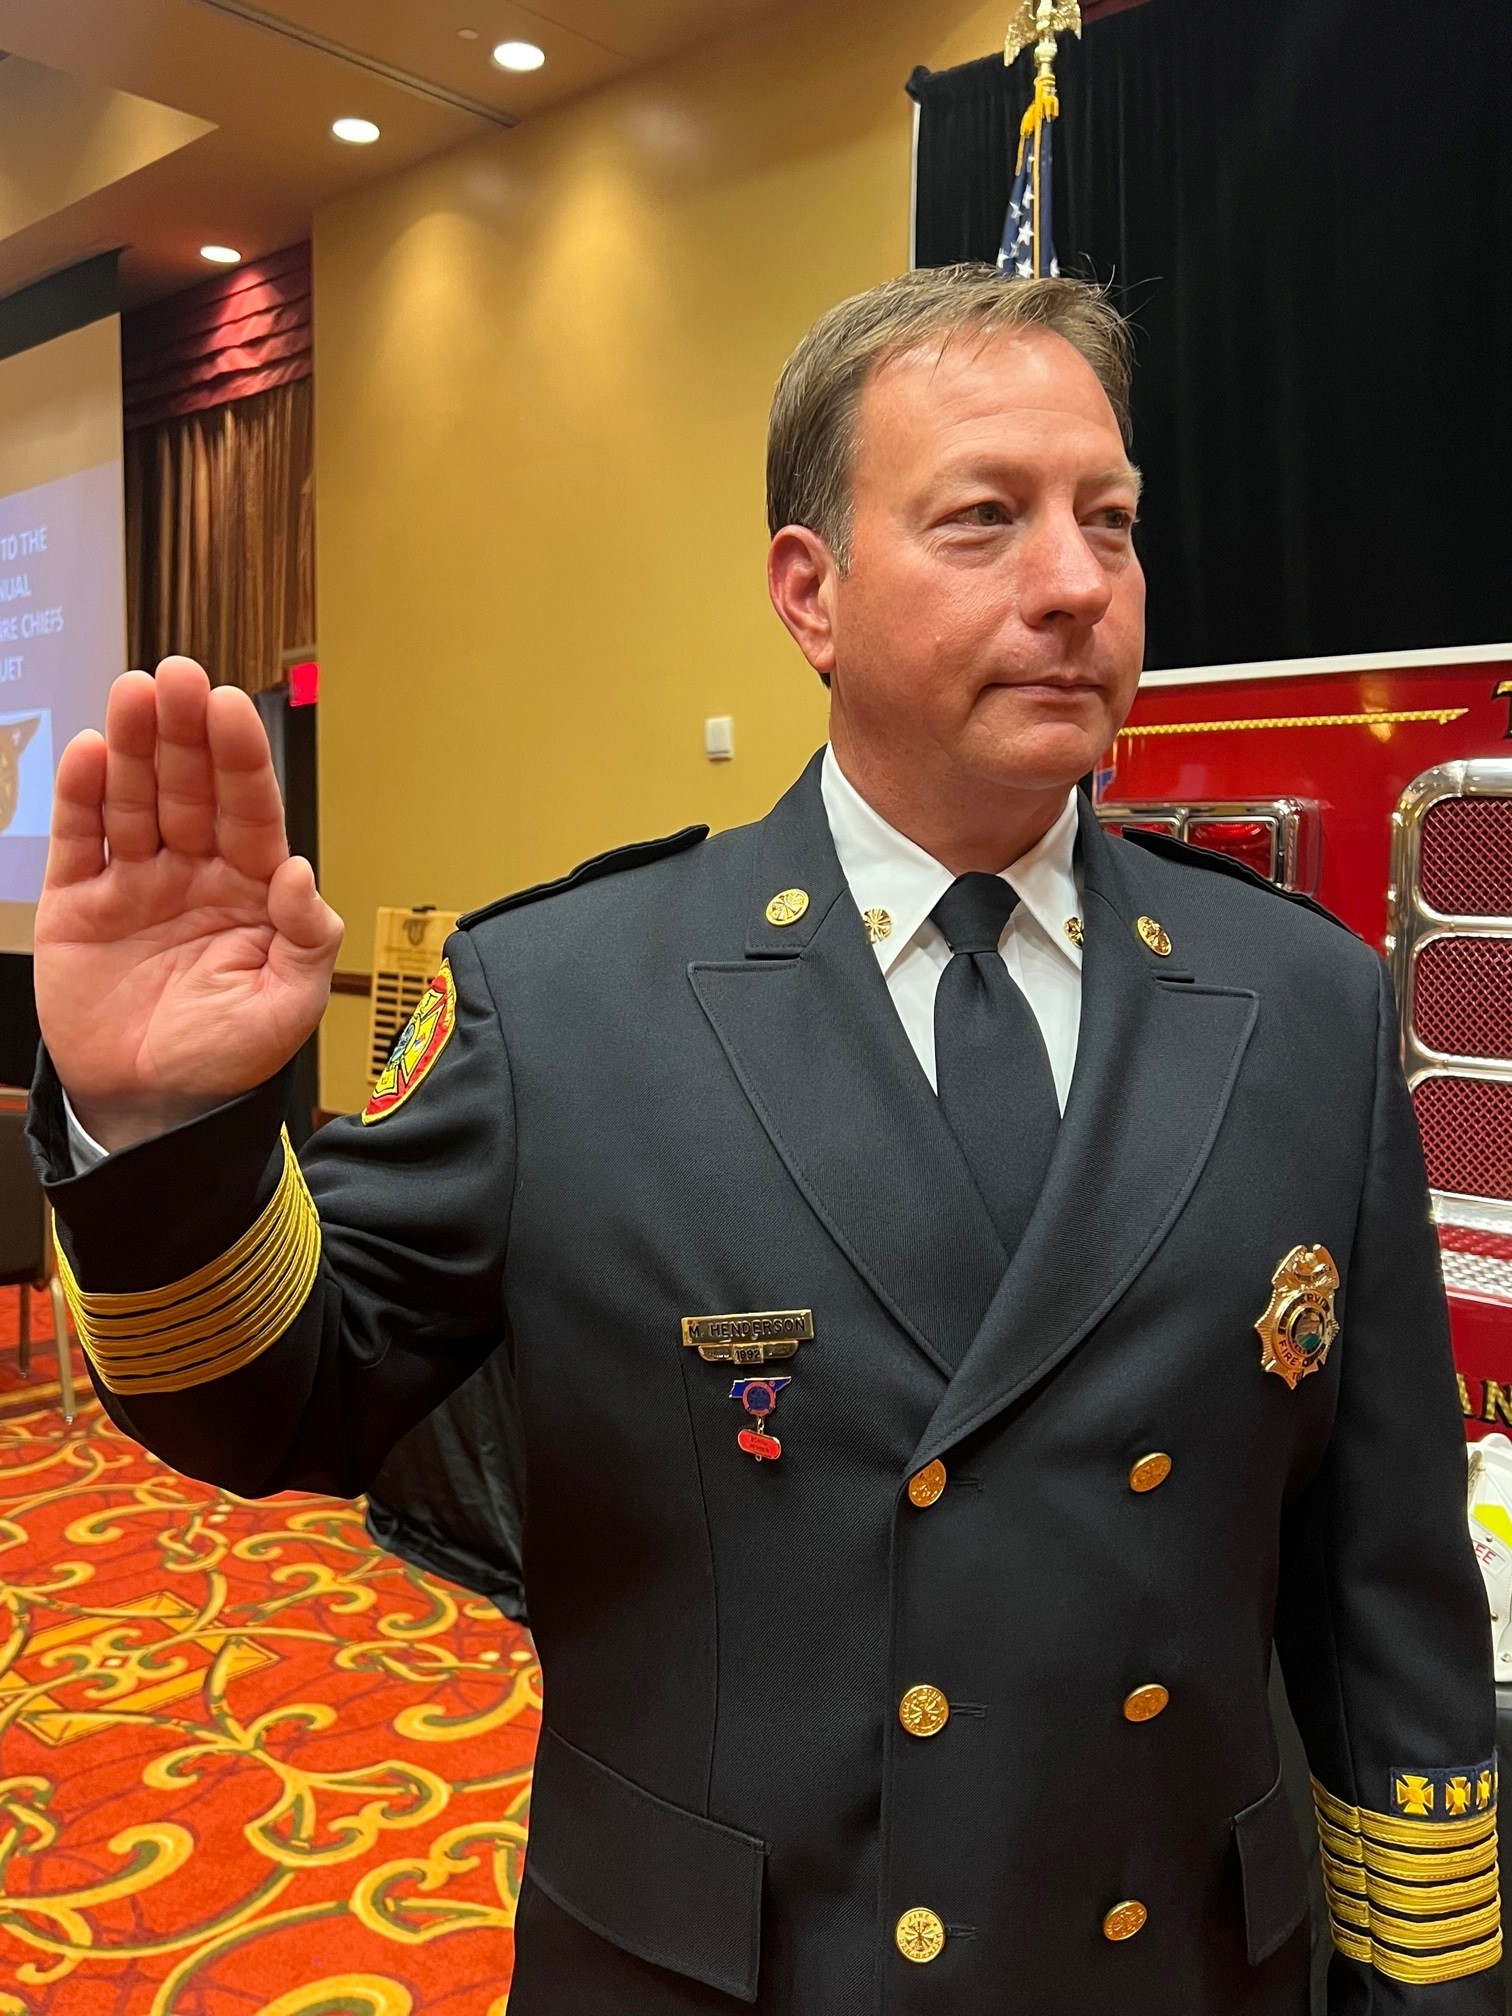 Le chef des pompiers de Sevierville est nommé président de l'association